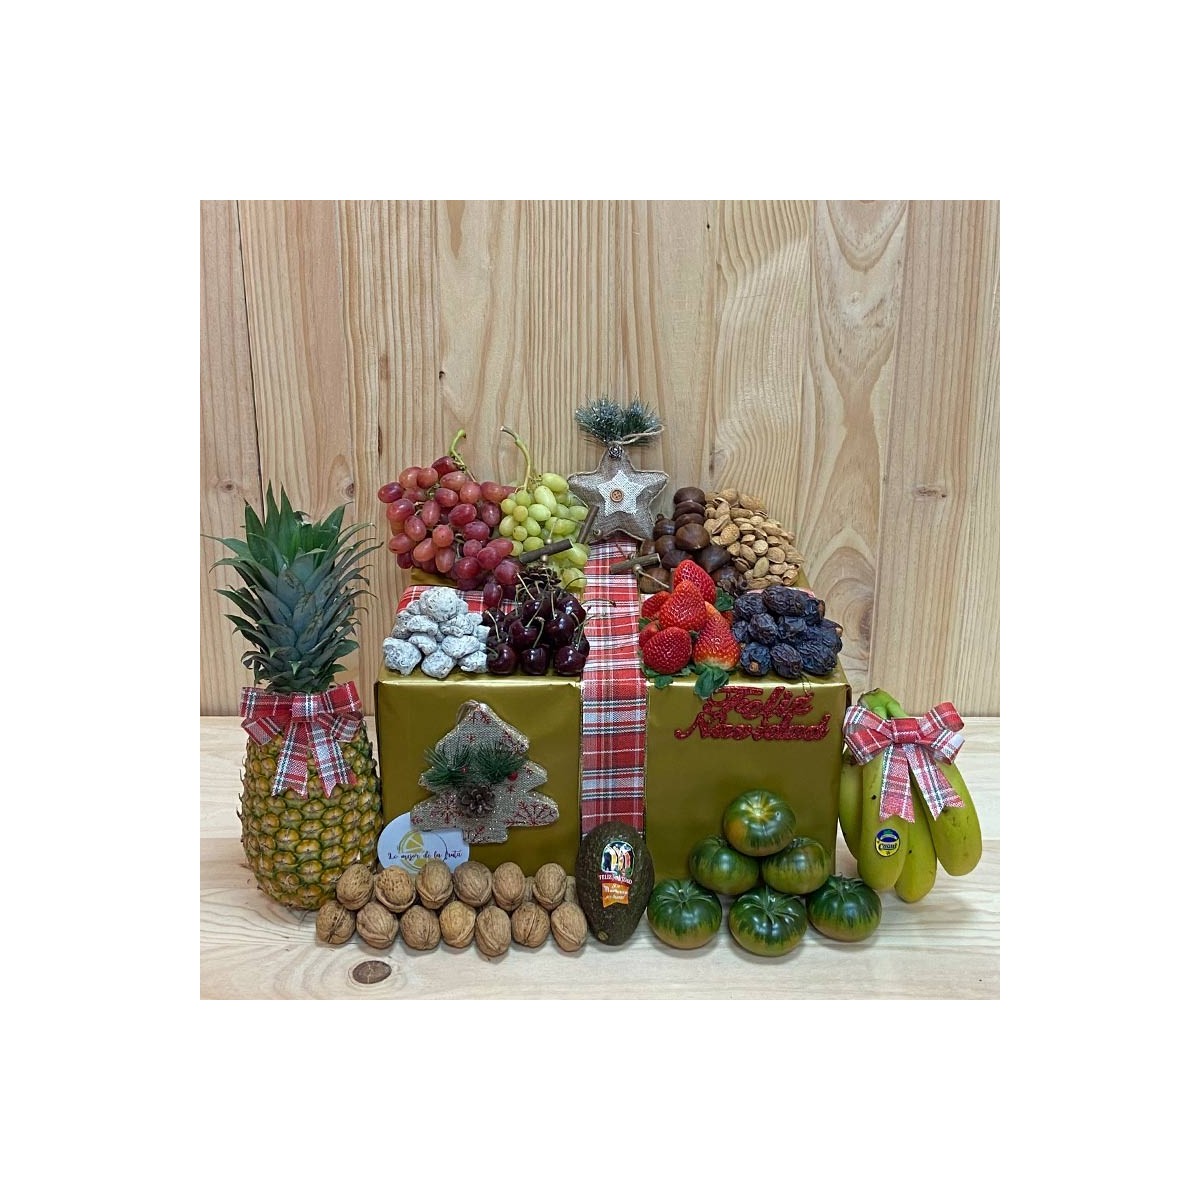 Pack Frutas De Navidad - Packs Frutas y Verduras -1- Lo mejor de la fruta